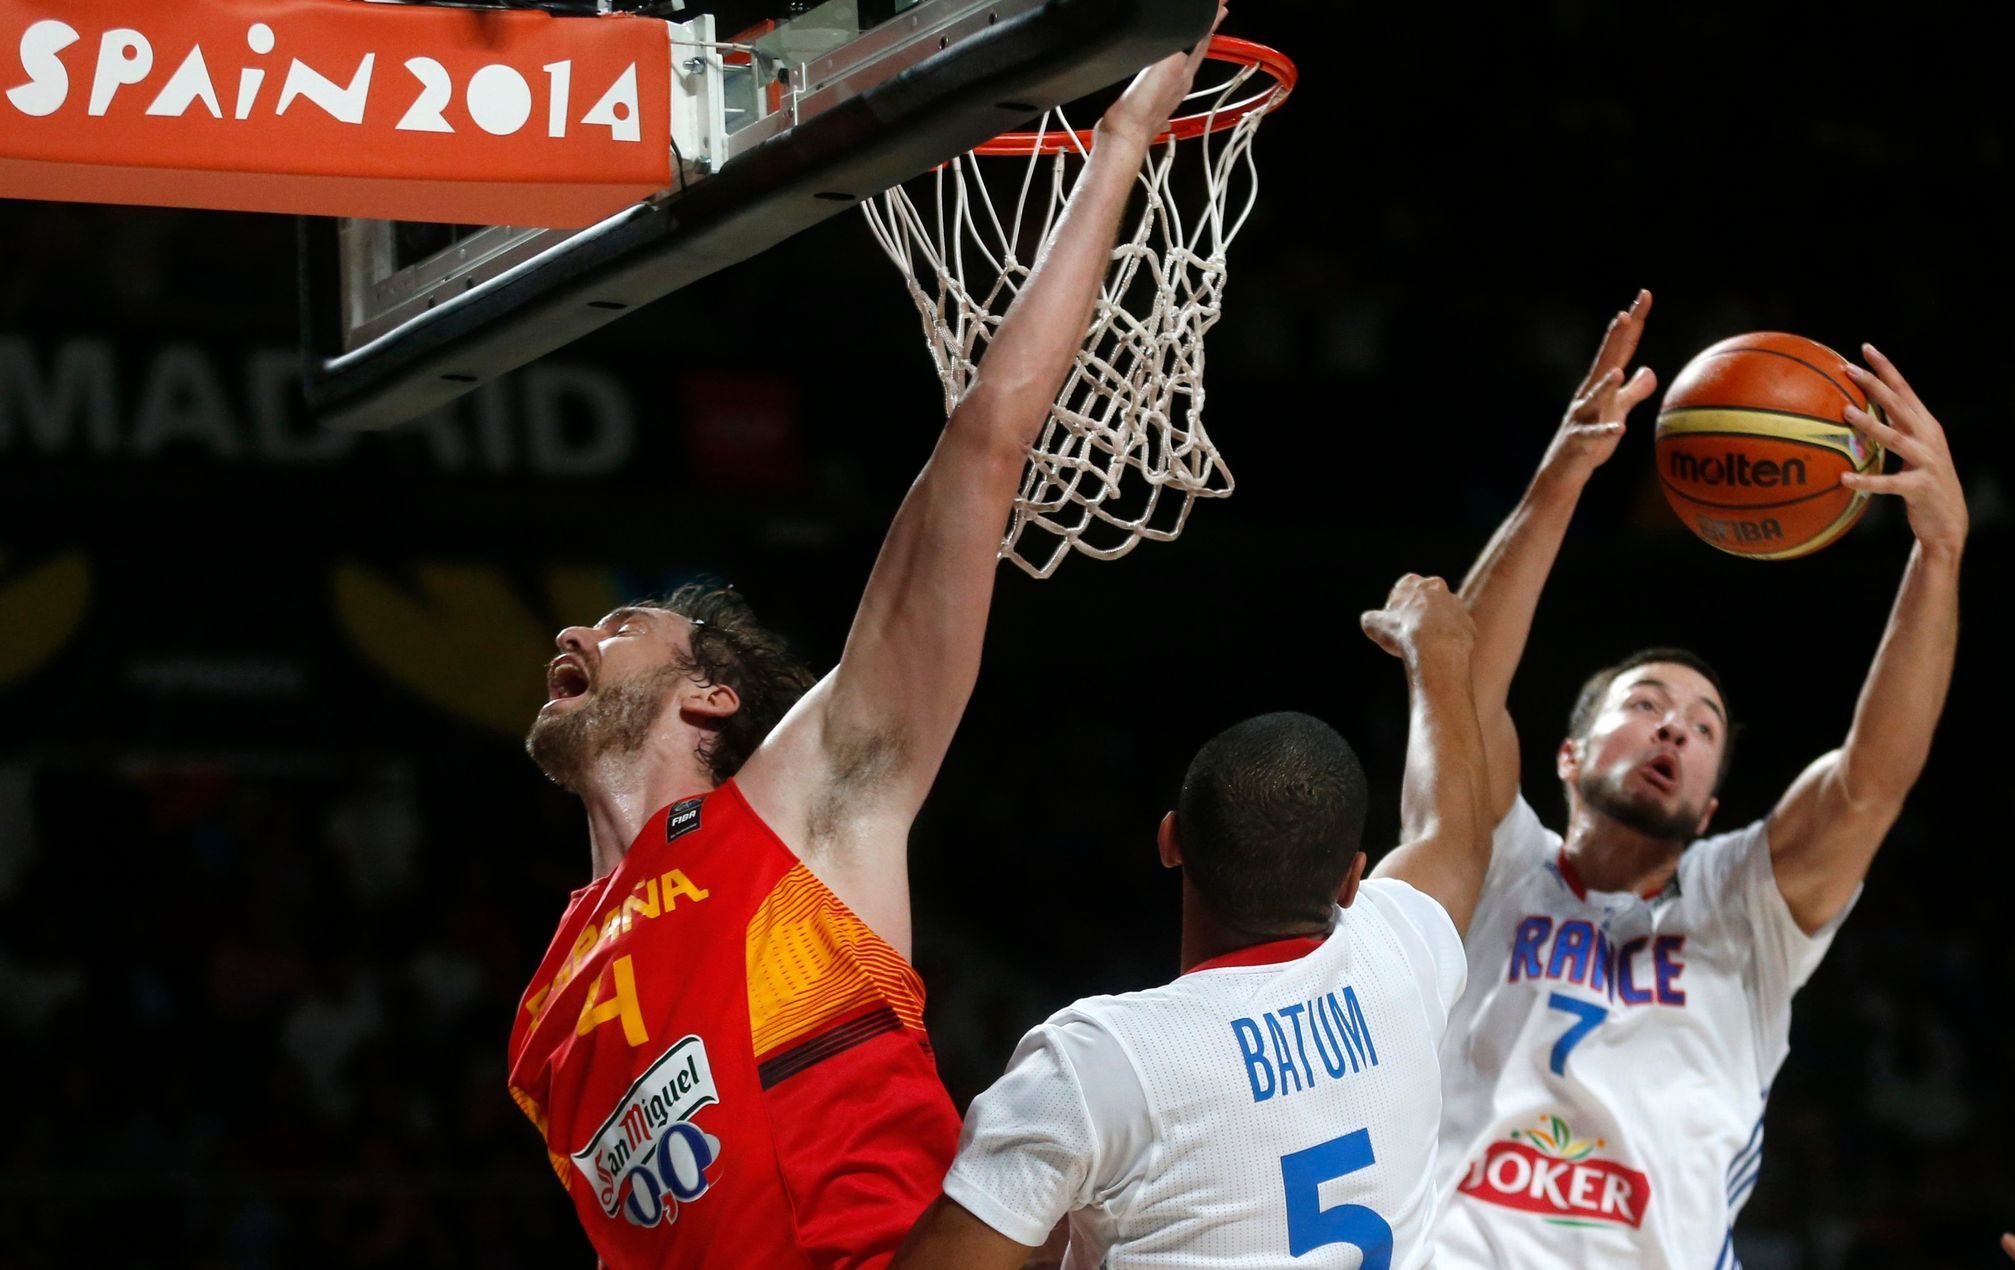 MS v basketbalu 2014: Španělsko - Francie (P. Gasol, Batum, Lauvergne)